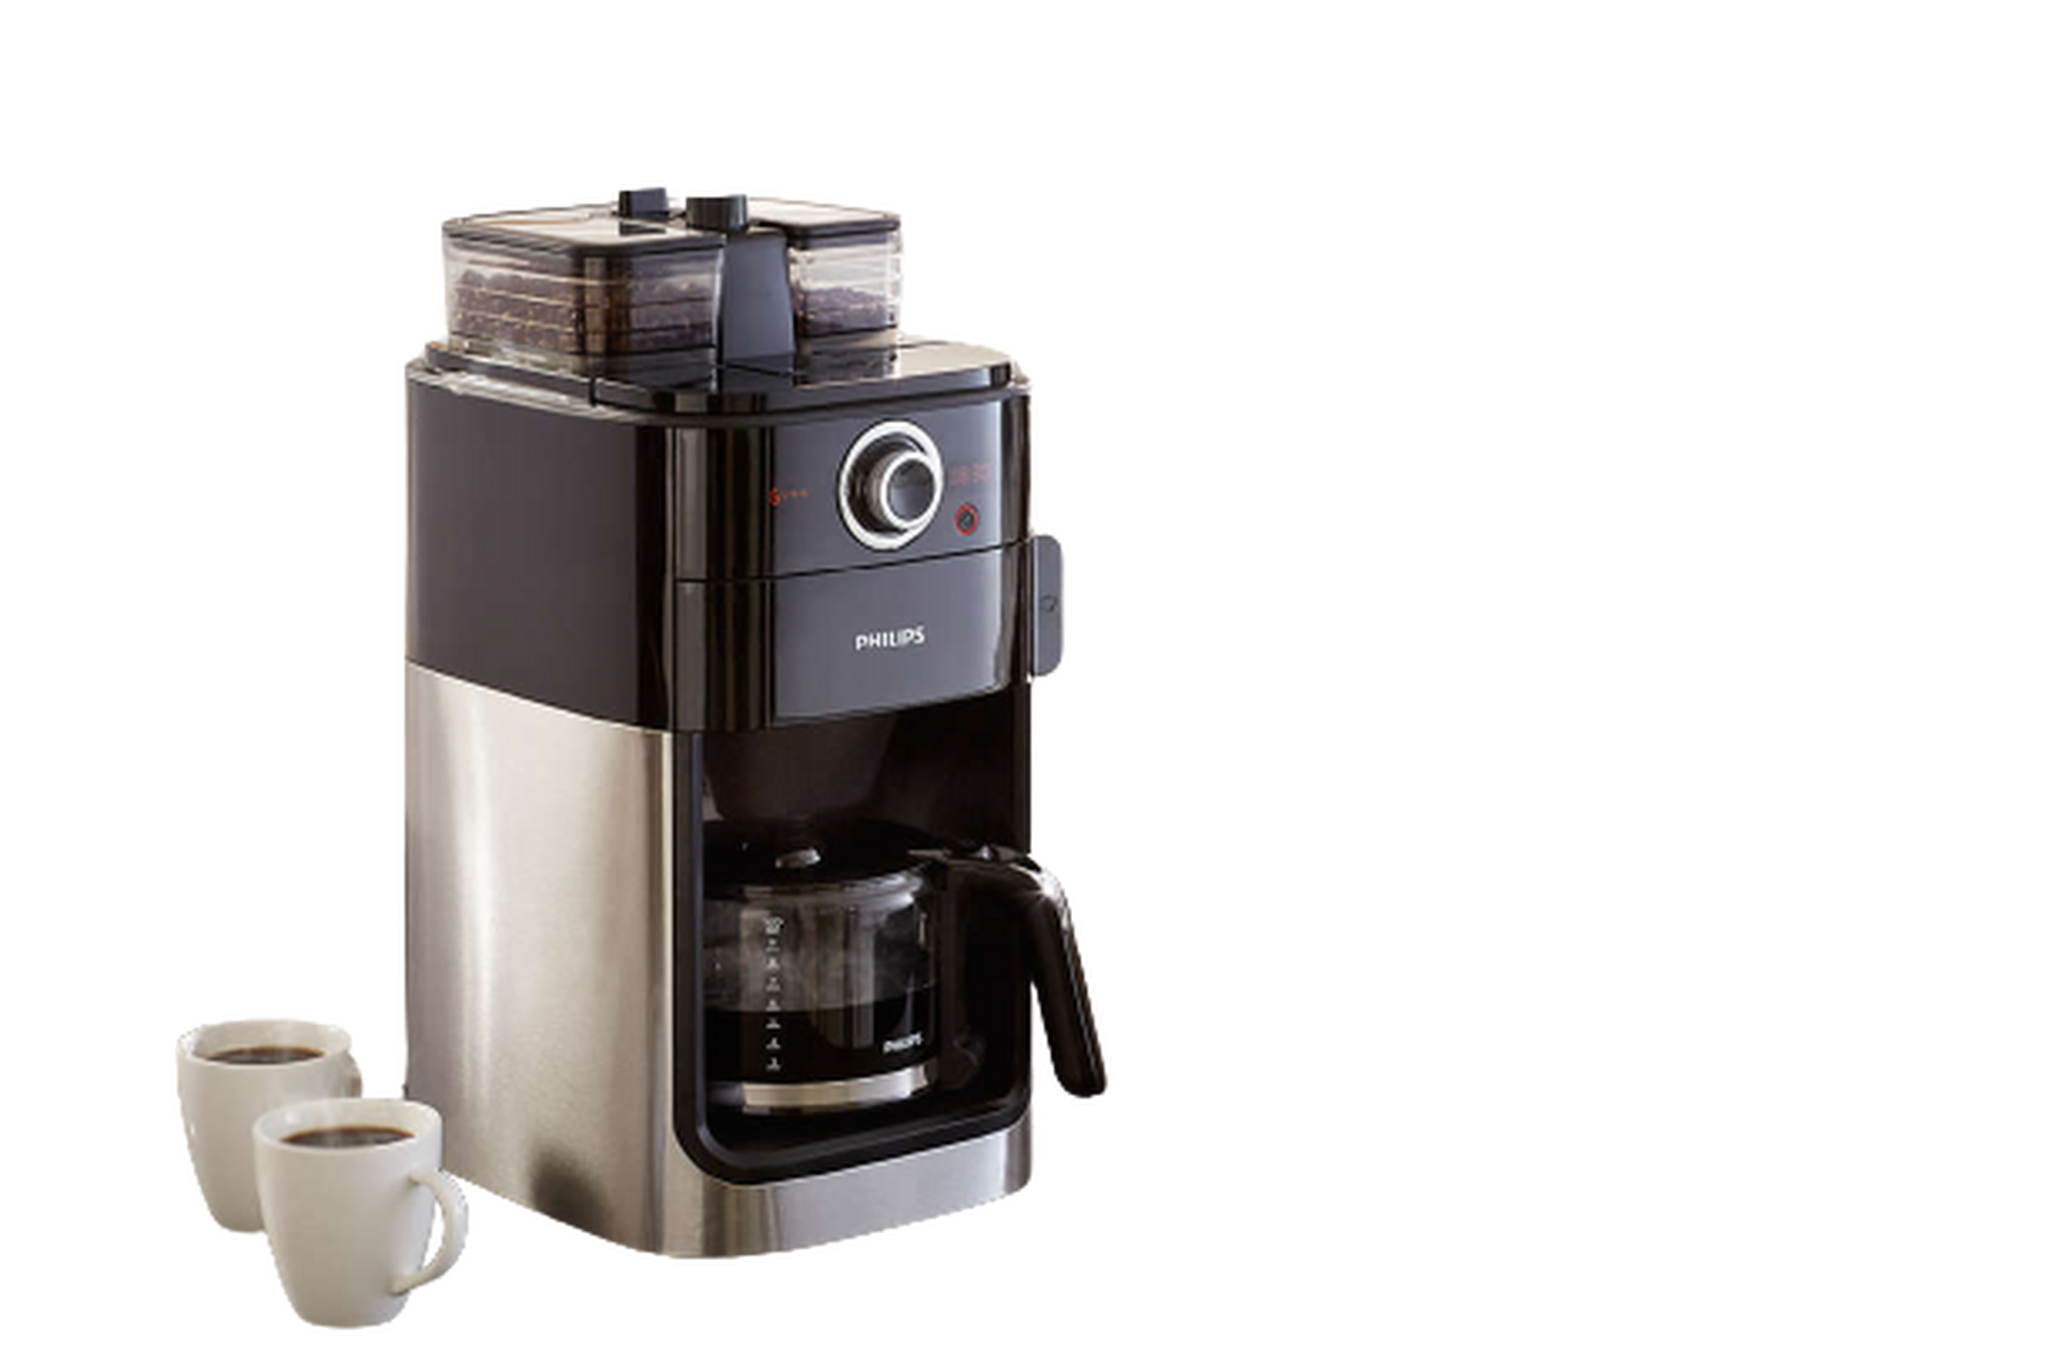 ماكينة تحضير القهوة جريند آند برو من فيليبس، 1000 واط، 1.2 لتر، HD7762 - أسود/فضي